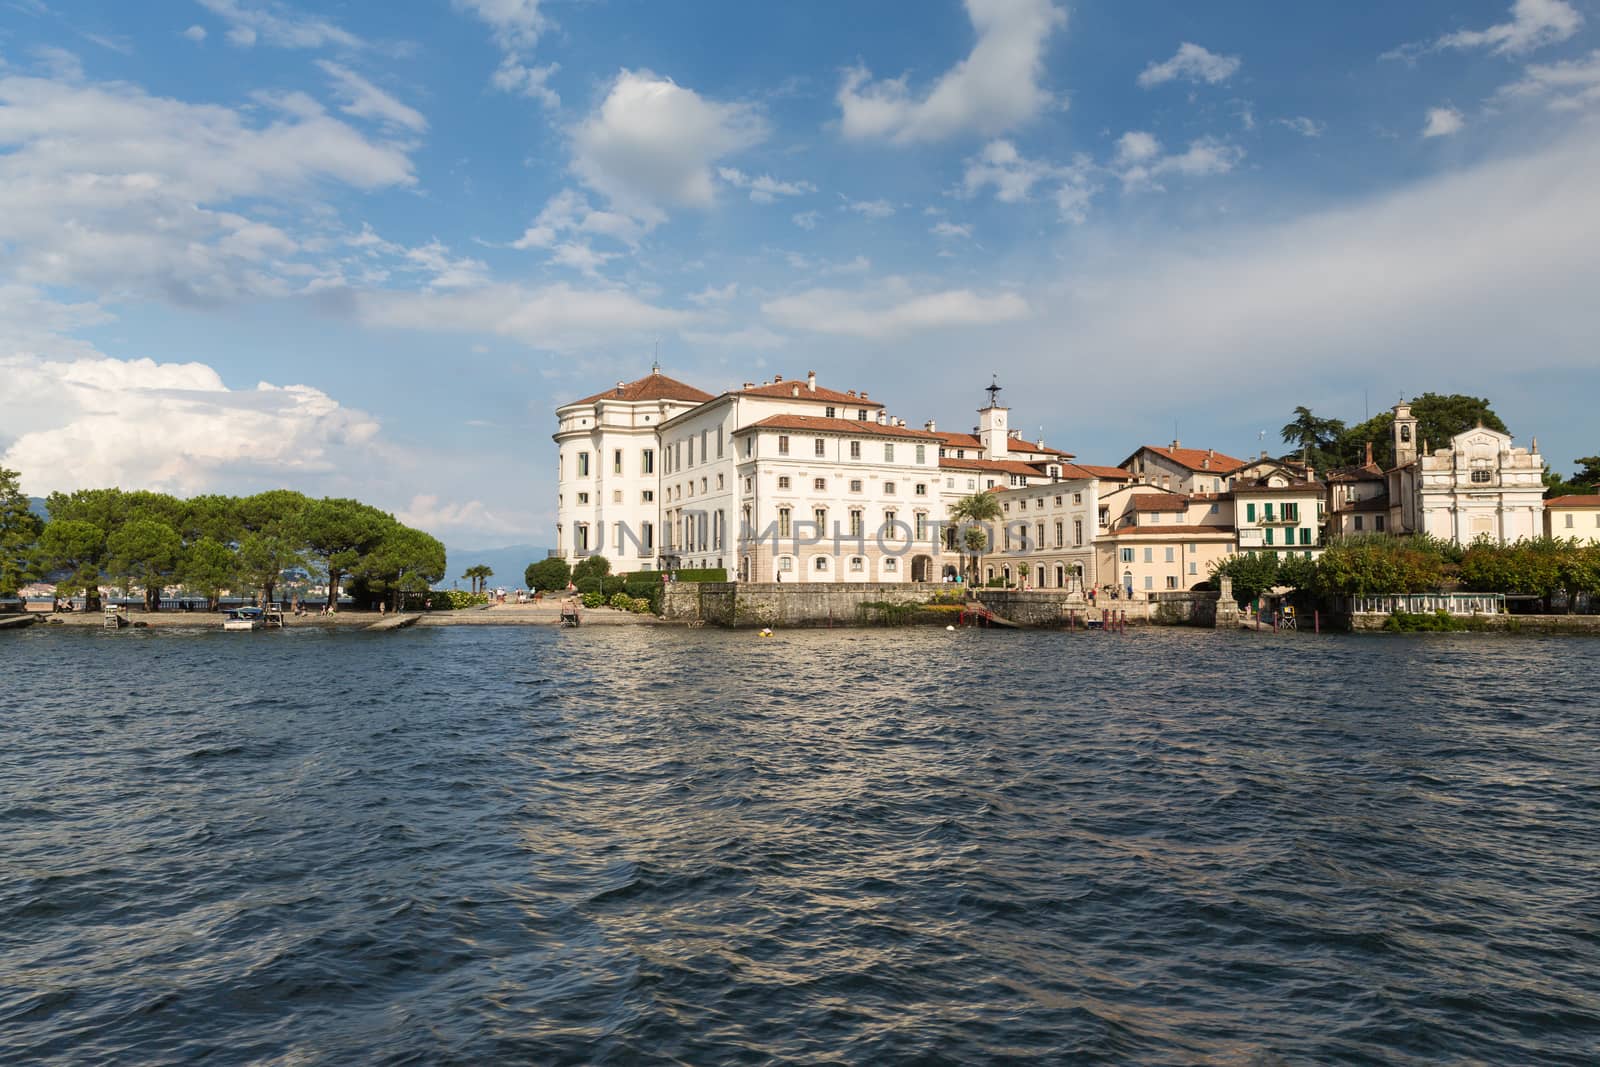 Isola Bella in Lake Maggiore near Stresa in Italy by chrisukphoto